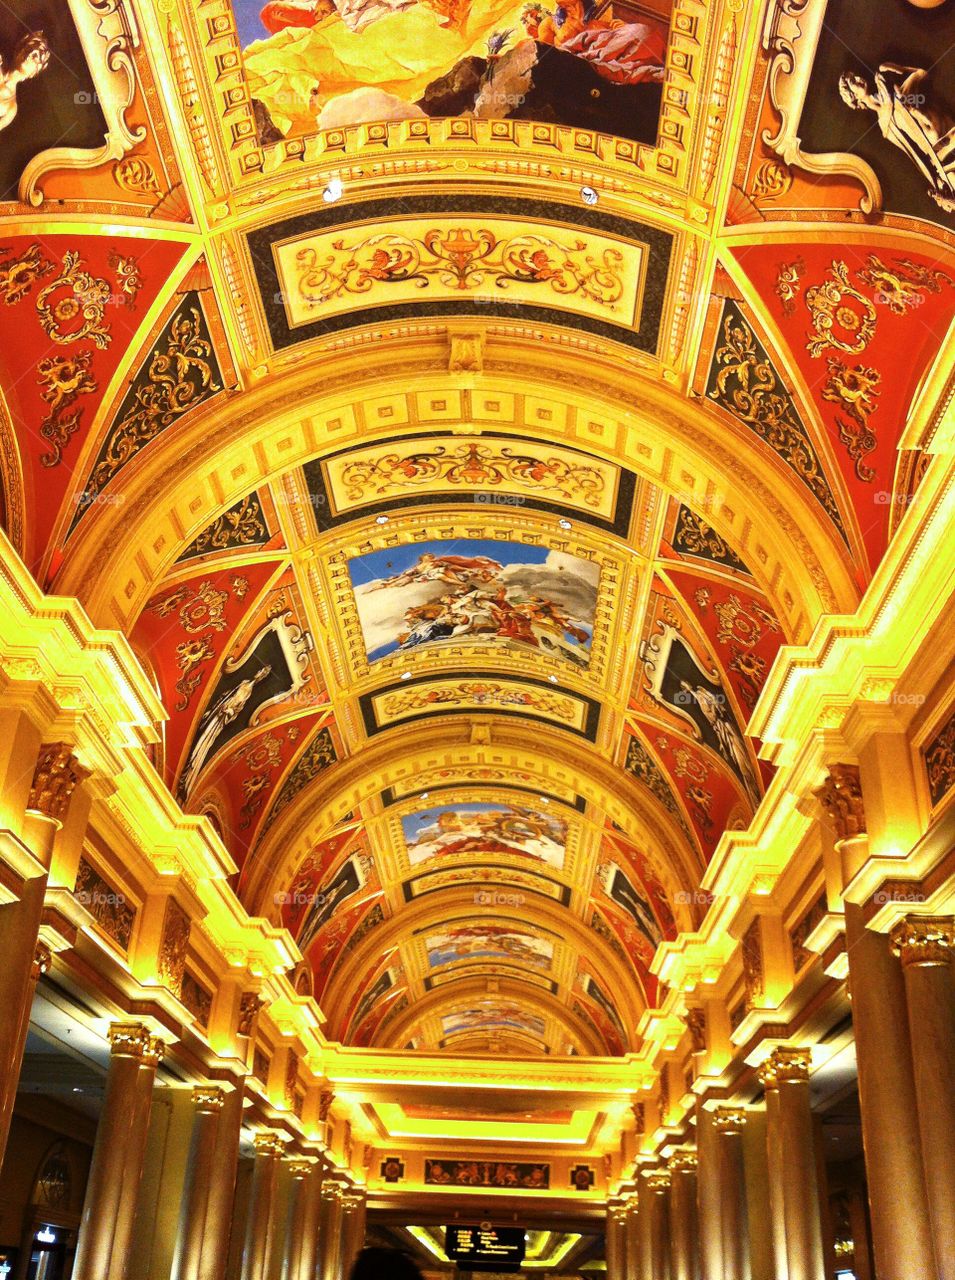 Painted Ceiling of Venetian Hotel in Macau